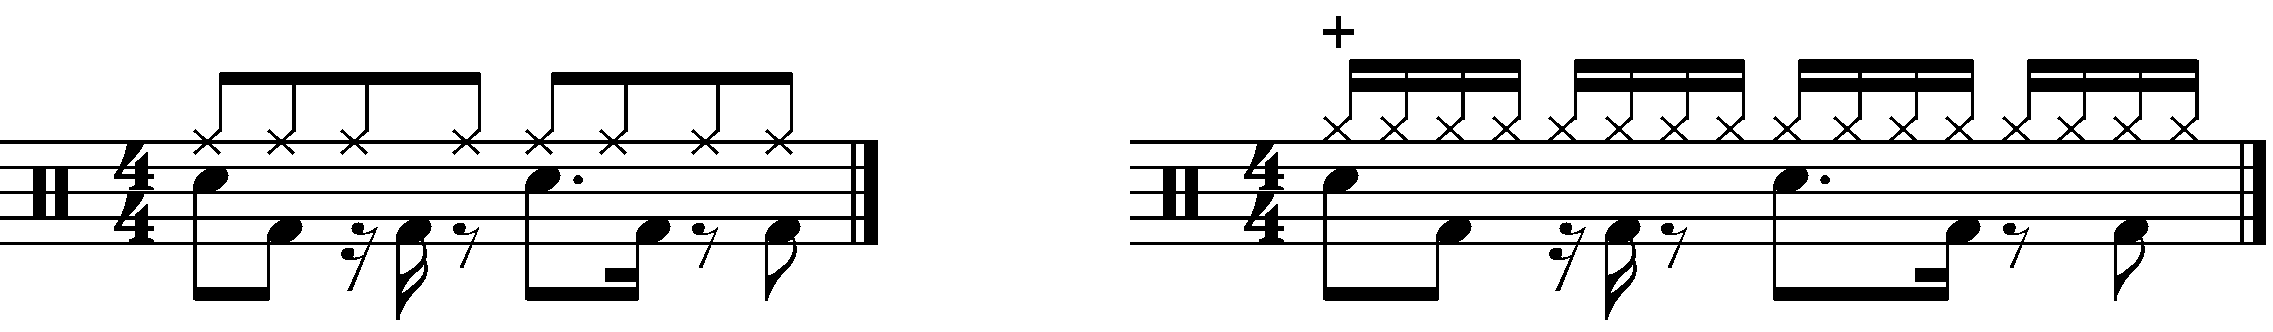 A 233332 rhythmed groove